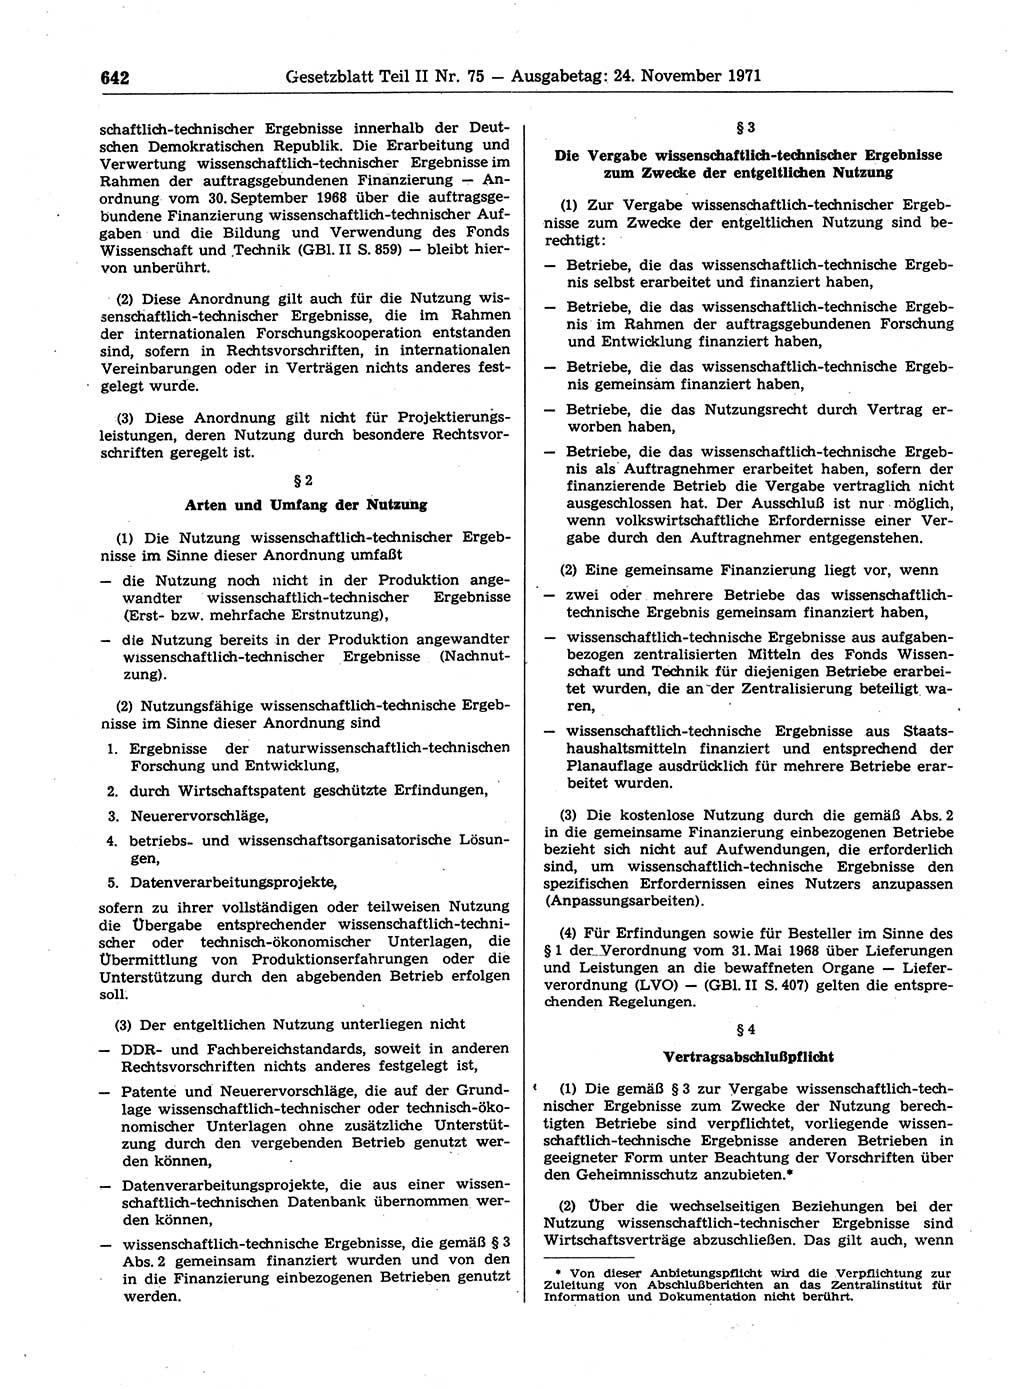 Gesetzblatt (GBl.) der Deutschen Demokratischen Republik (DDR) Teil ⅠⅠ 1971, Seite 642 (GBl. DDR ⅠⅠ 1971, S. 642)